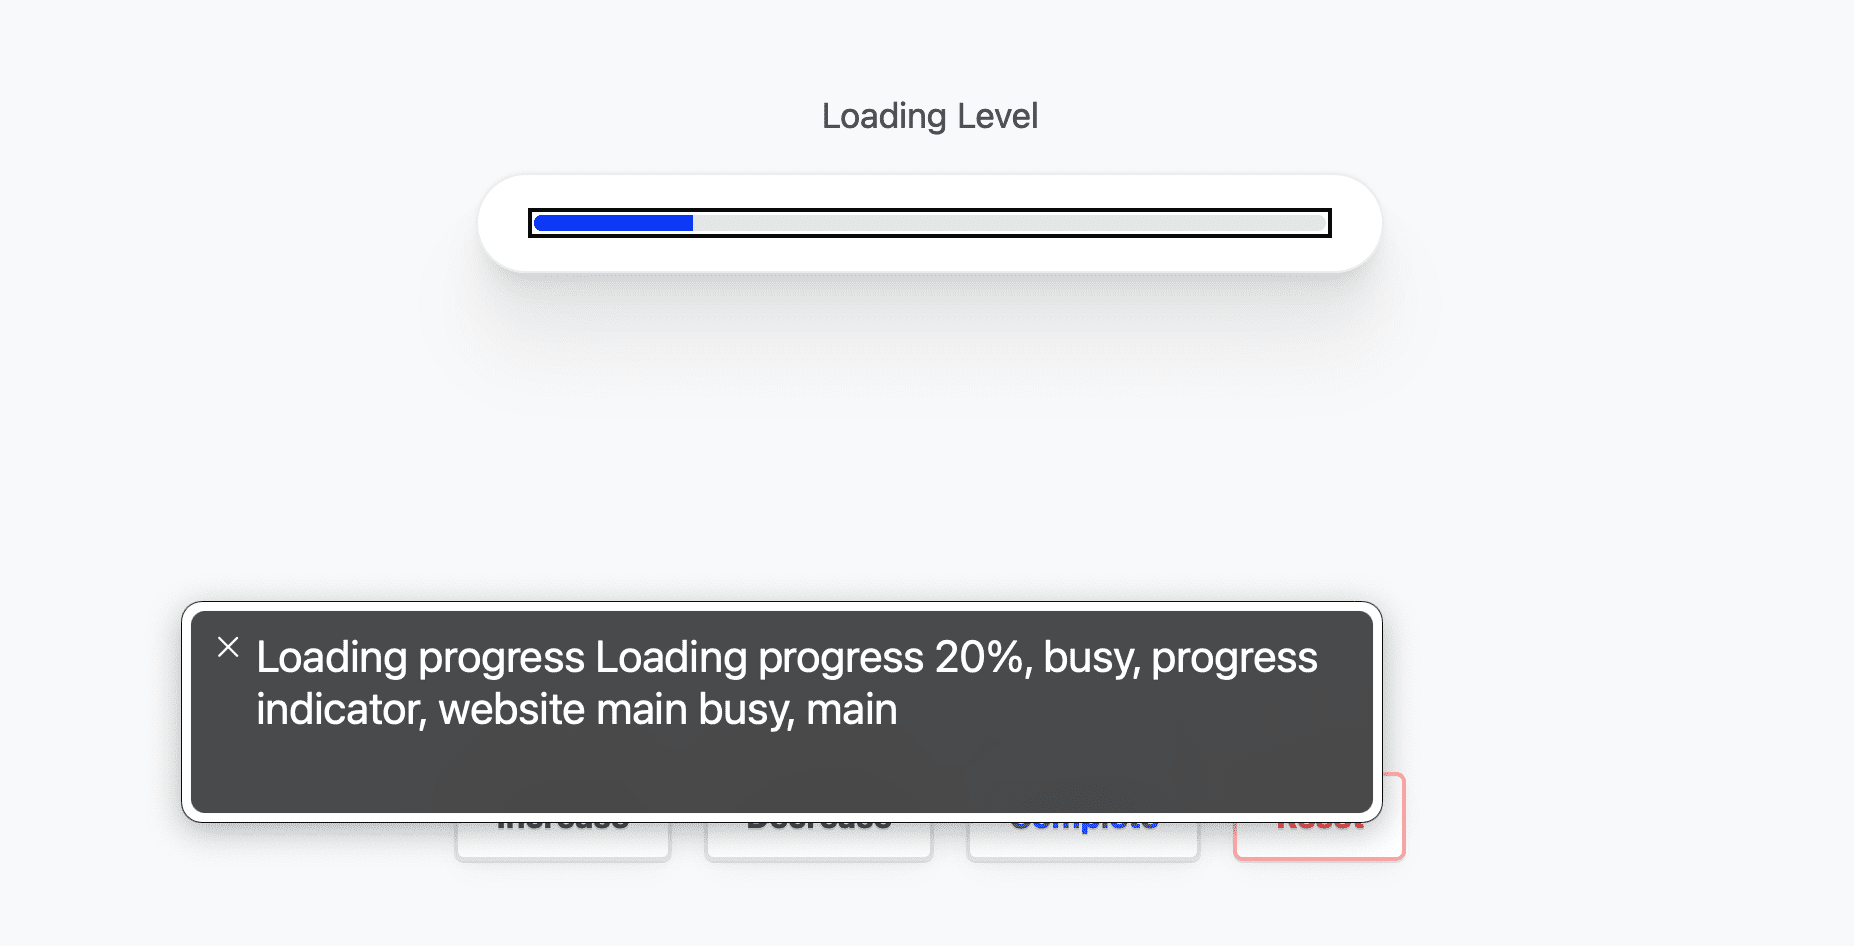 צילום מסך של אפליקציית Voiceover ב-Mac OS שקוראים את התקדמות סרגל הטעינה למשתמש.